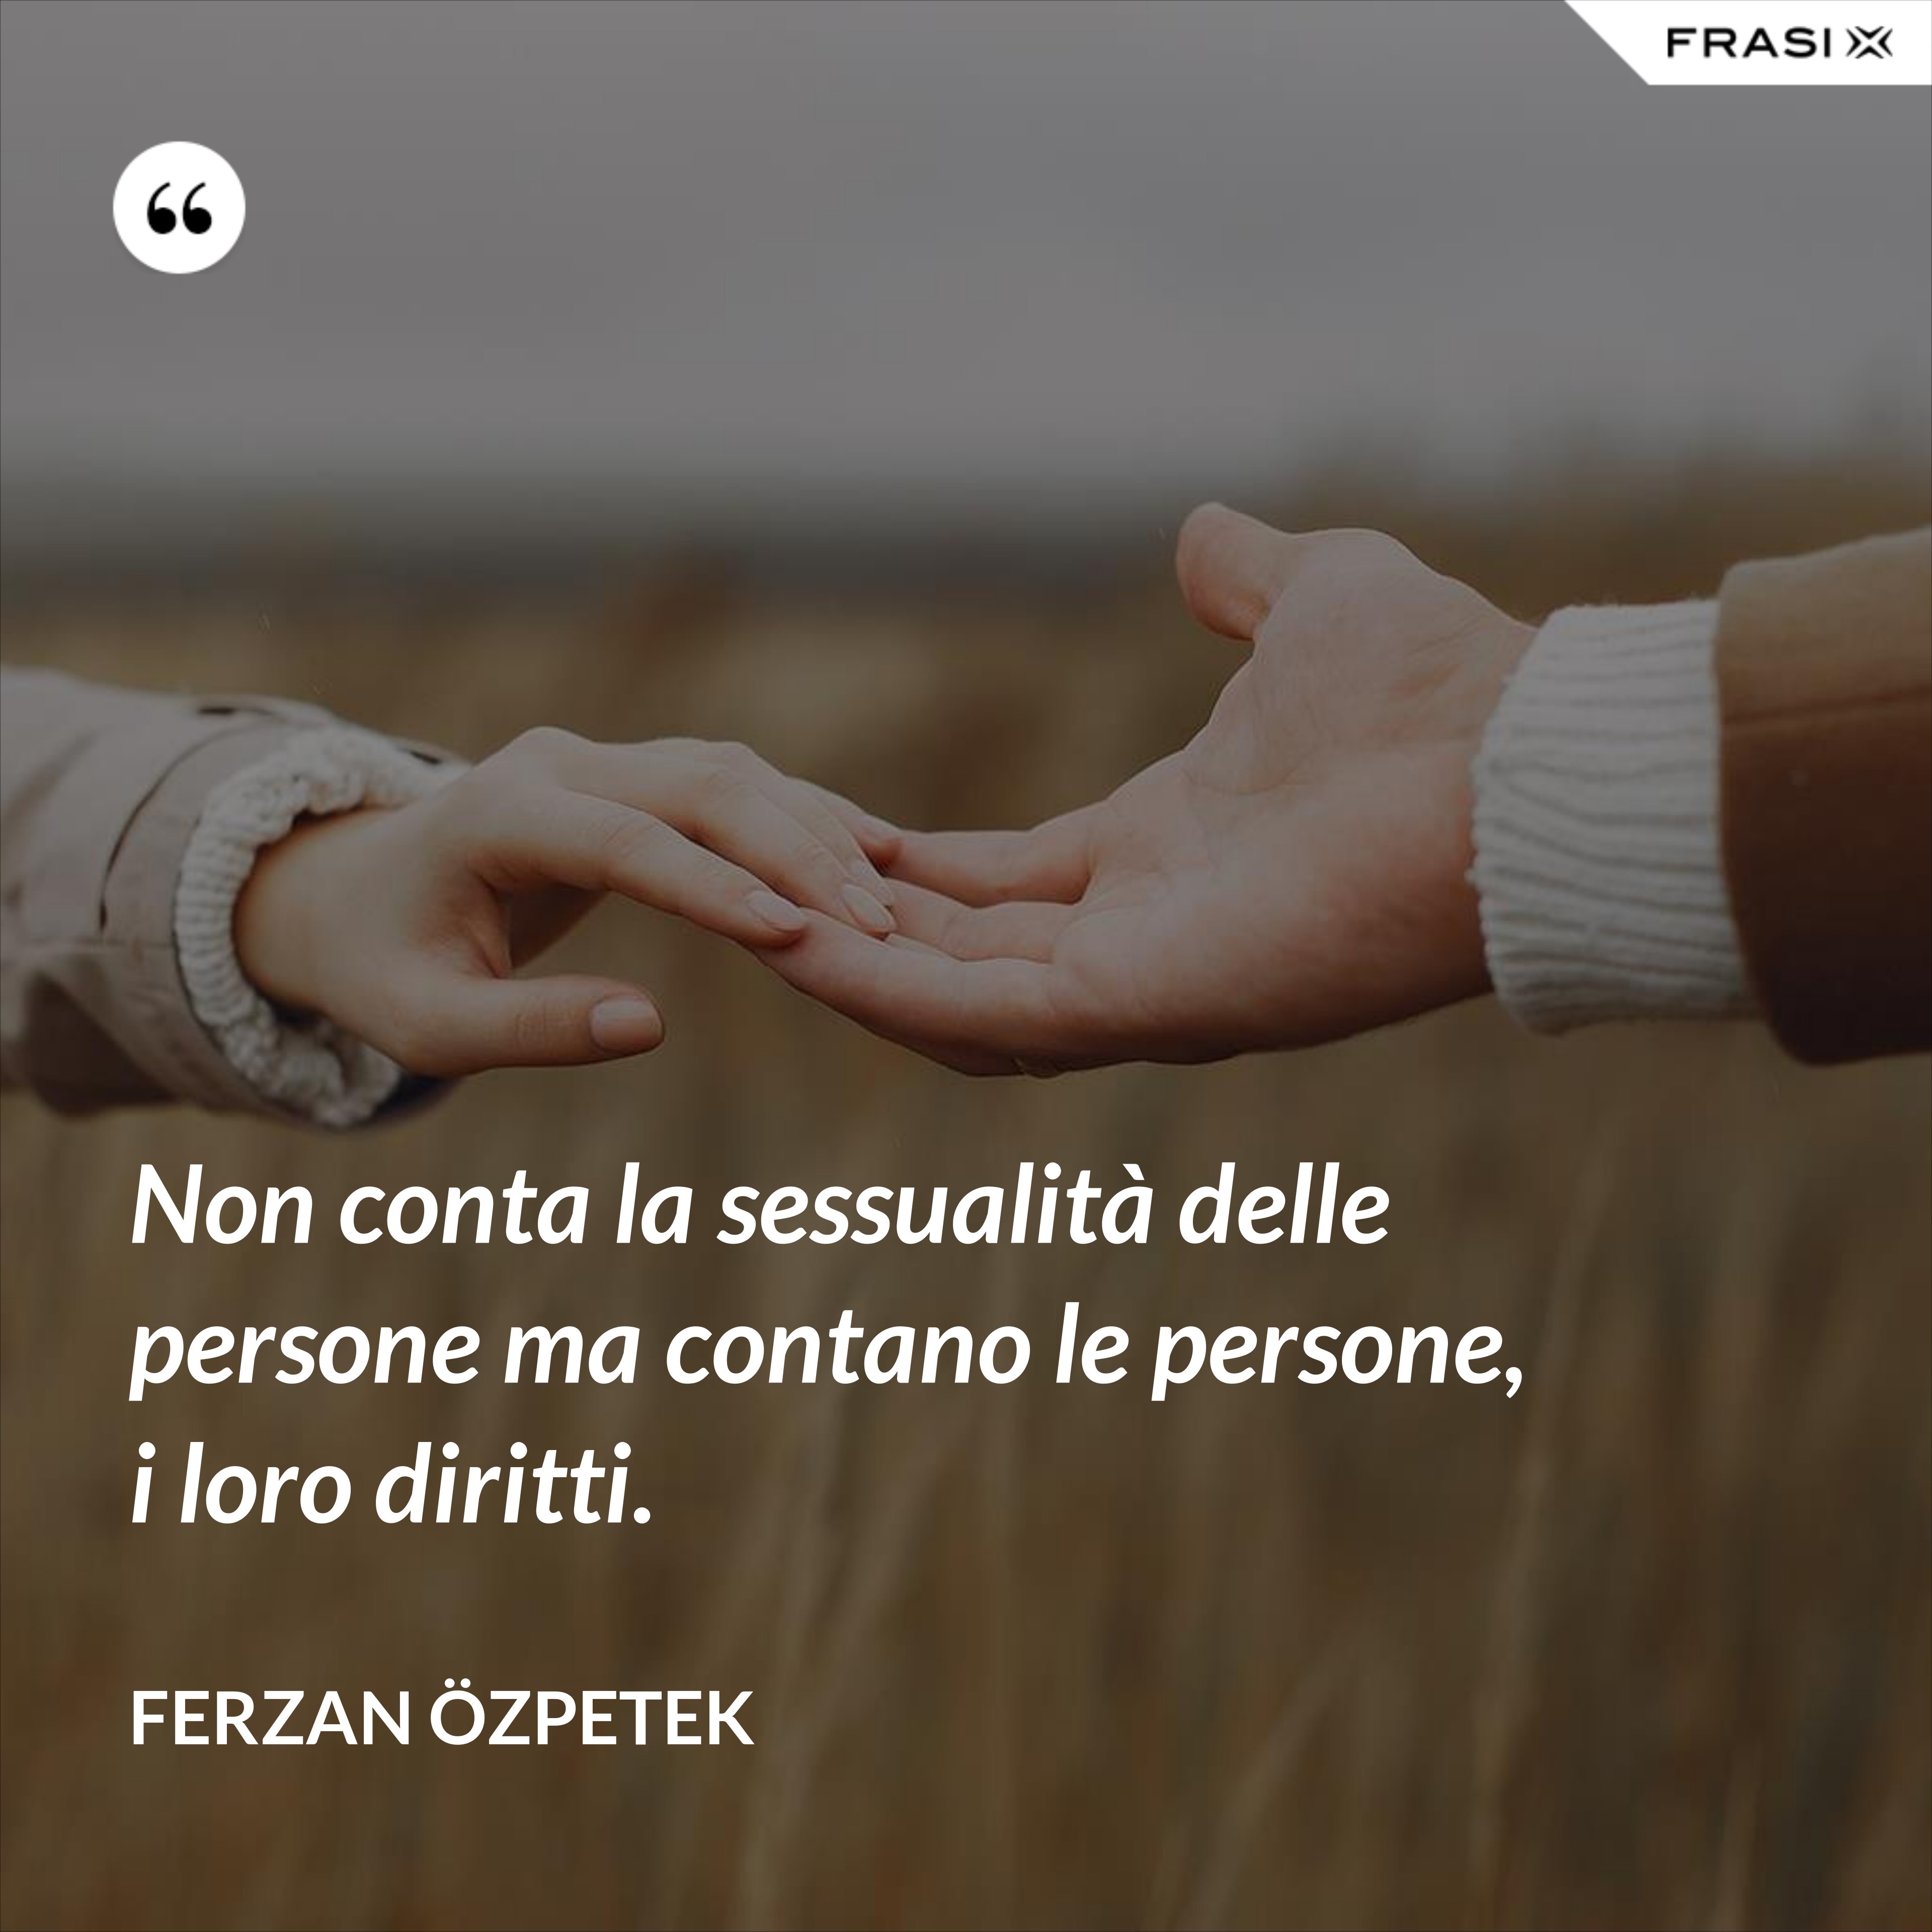 Non conta la sessualità delle persone ma contano le persone, i loro diritti. - Ferzan Özpetek